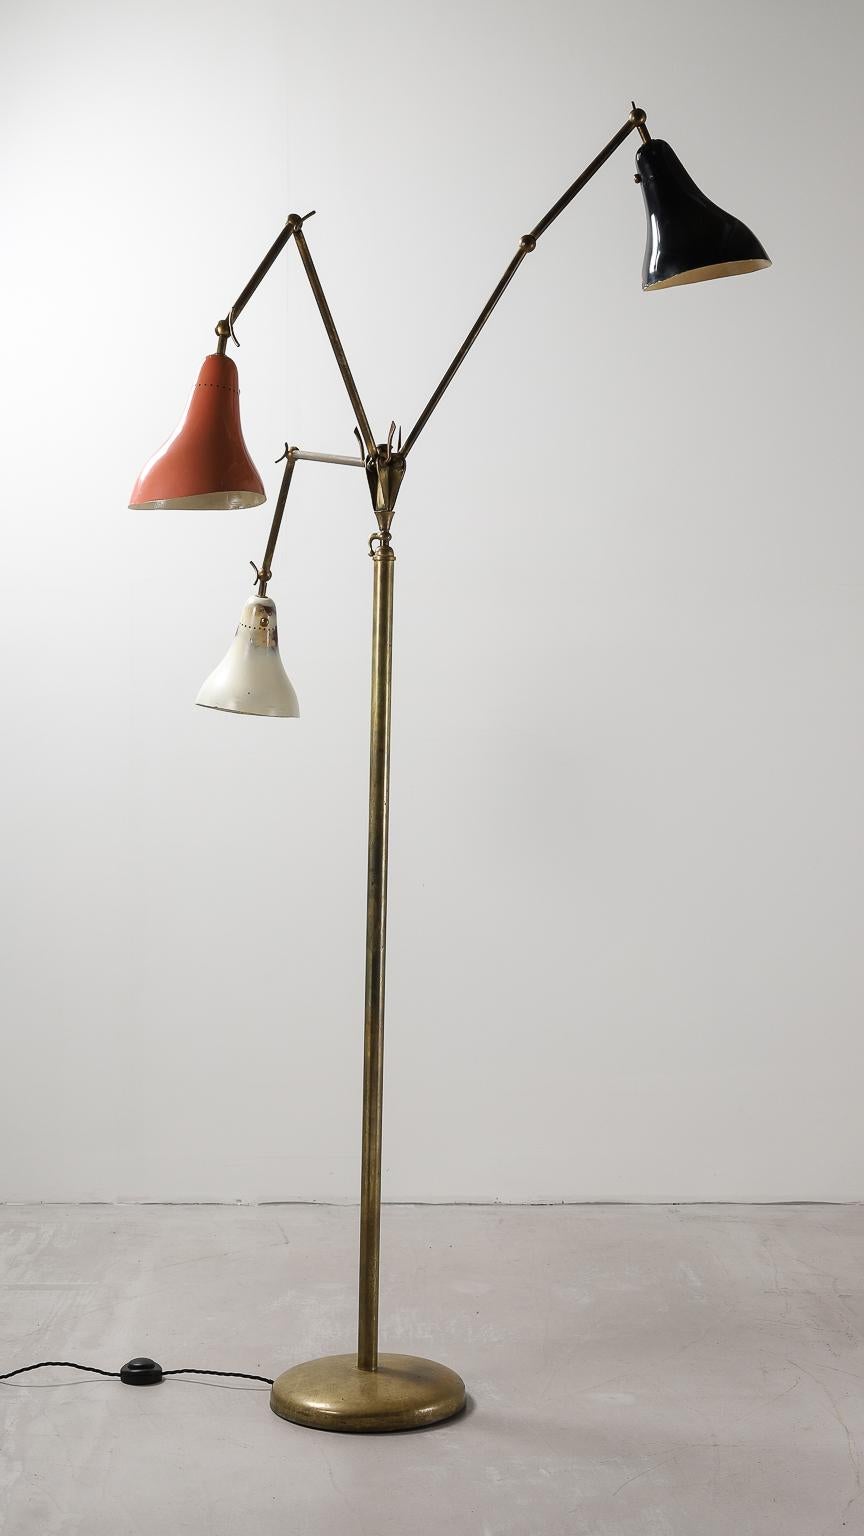 Paint 3-Arm Floor Lamp by Stilnovo 1950s